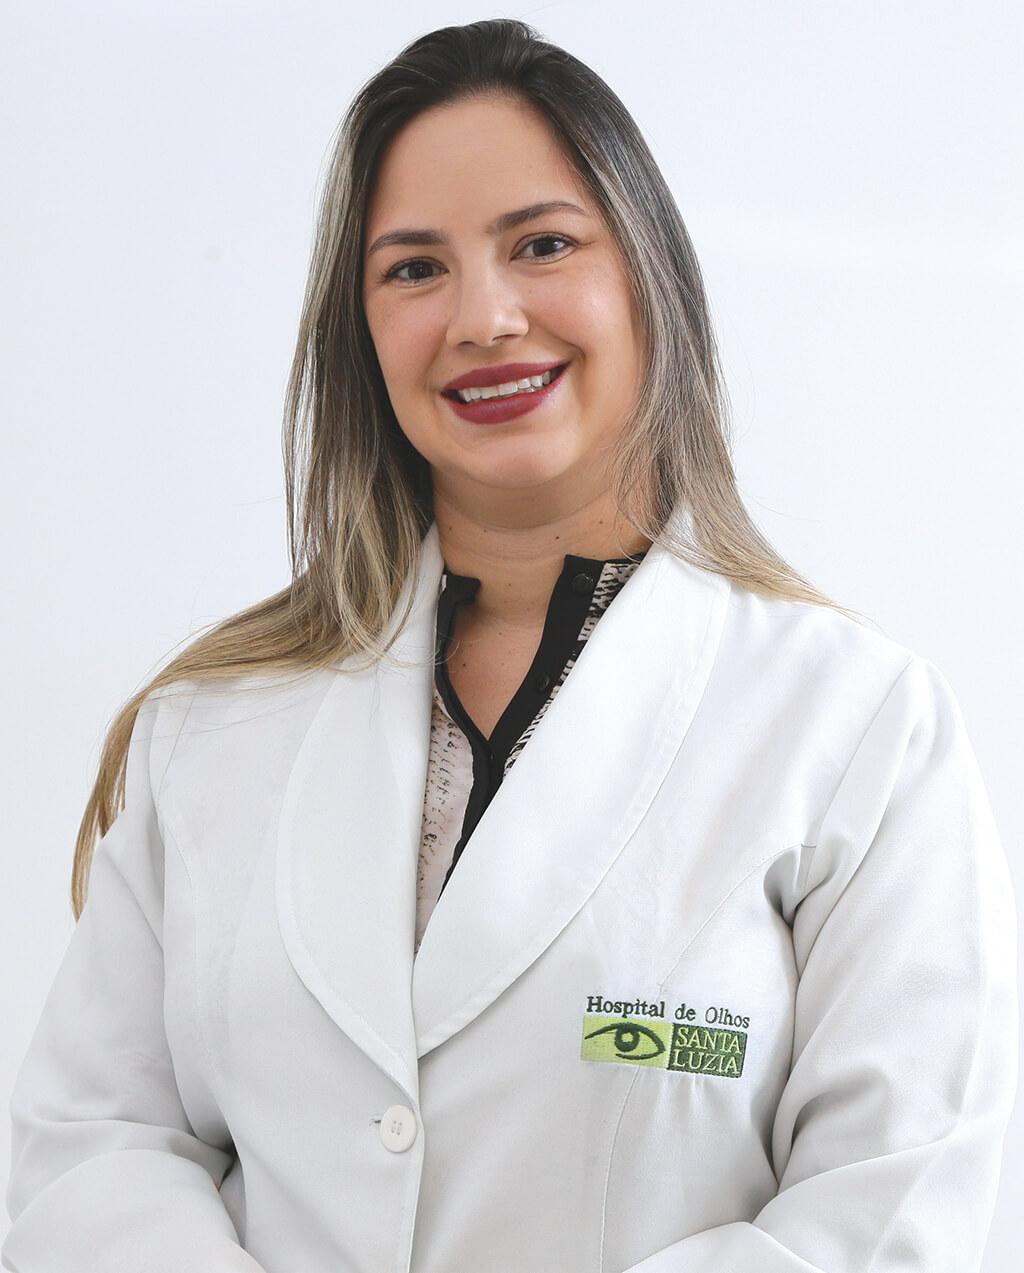 Carolina Siqueira (CRM 17821)